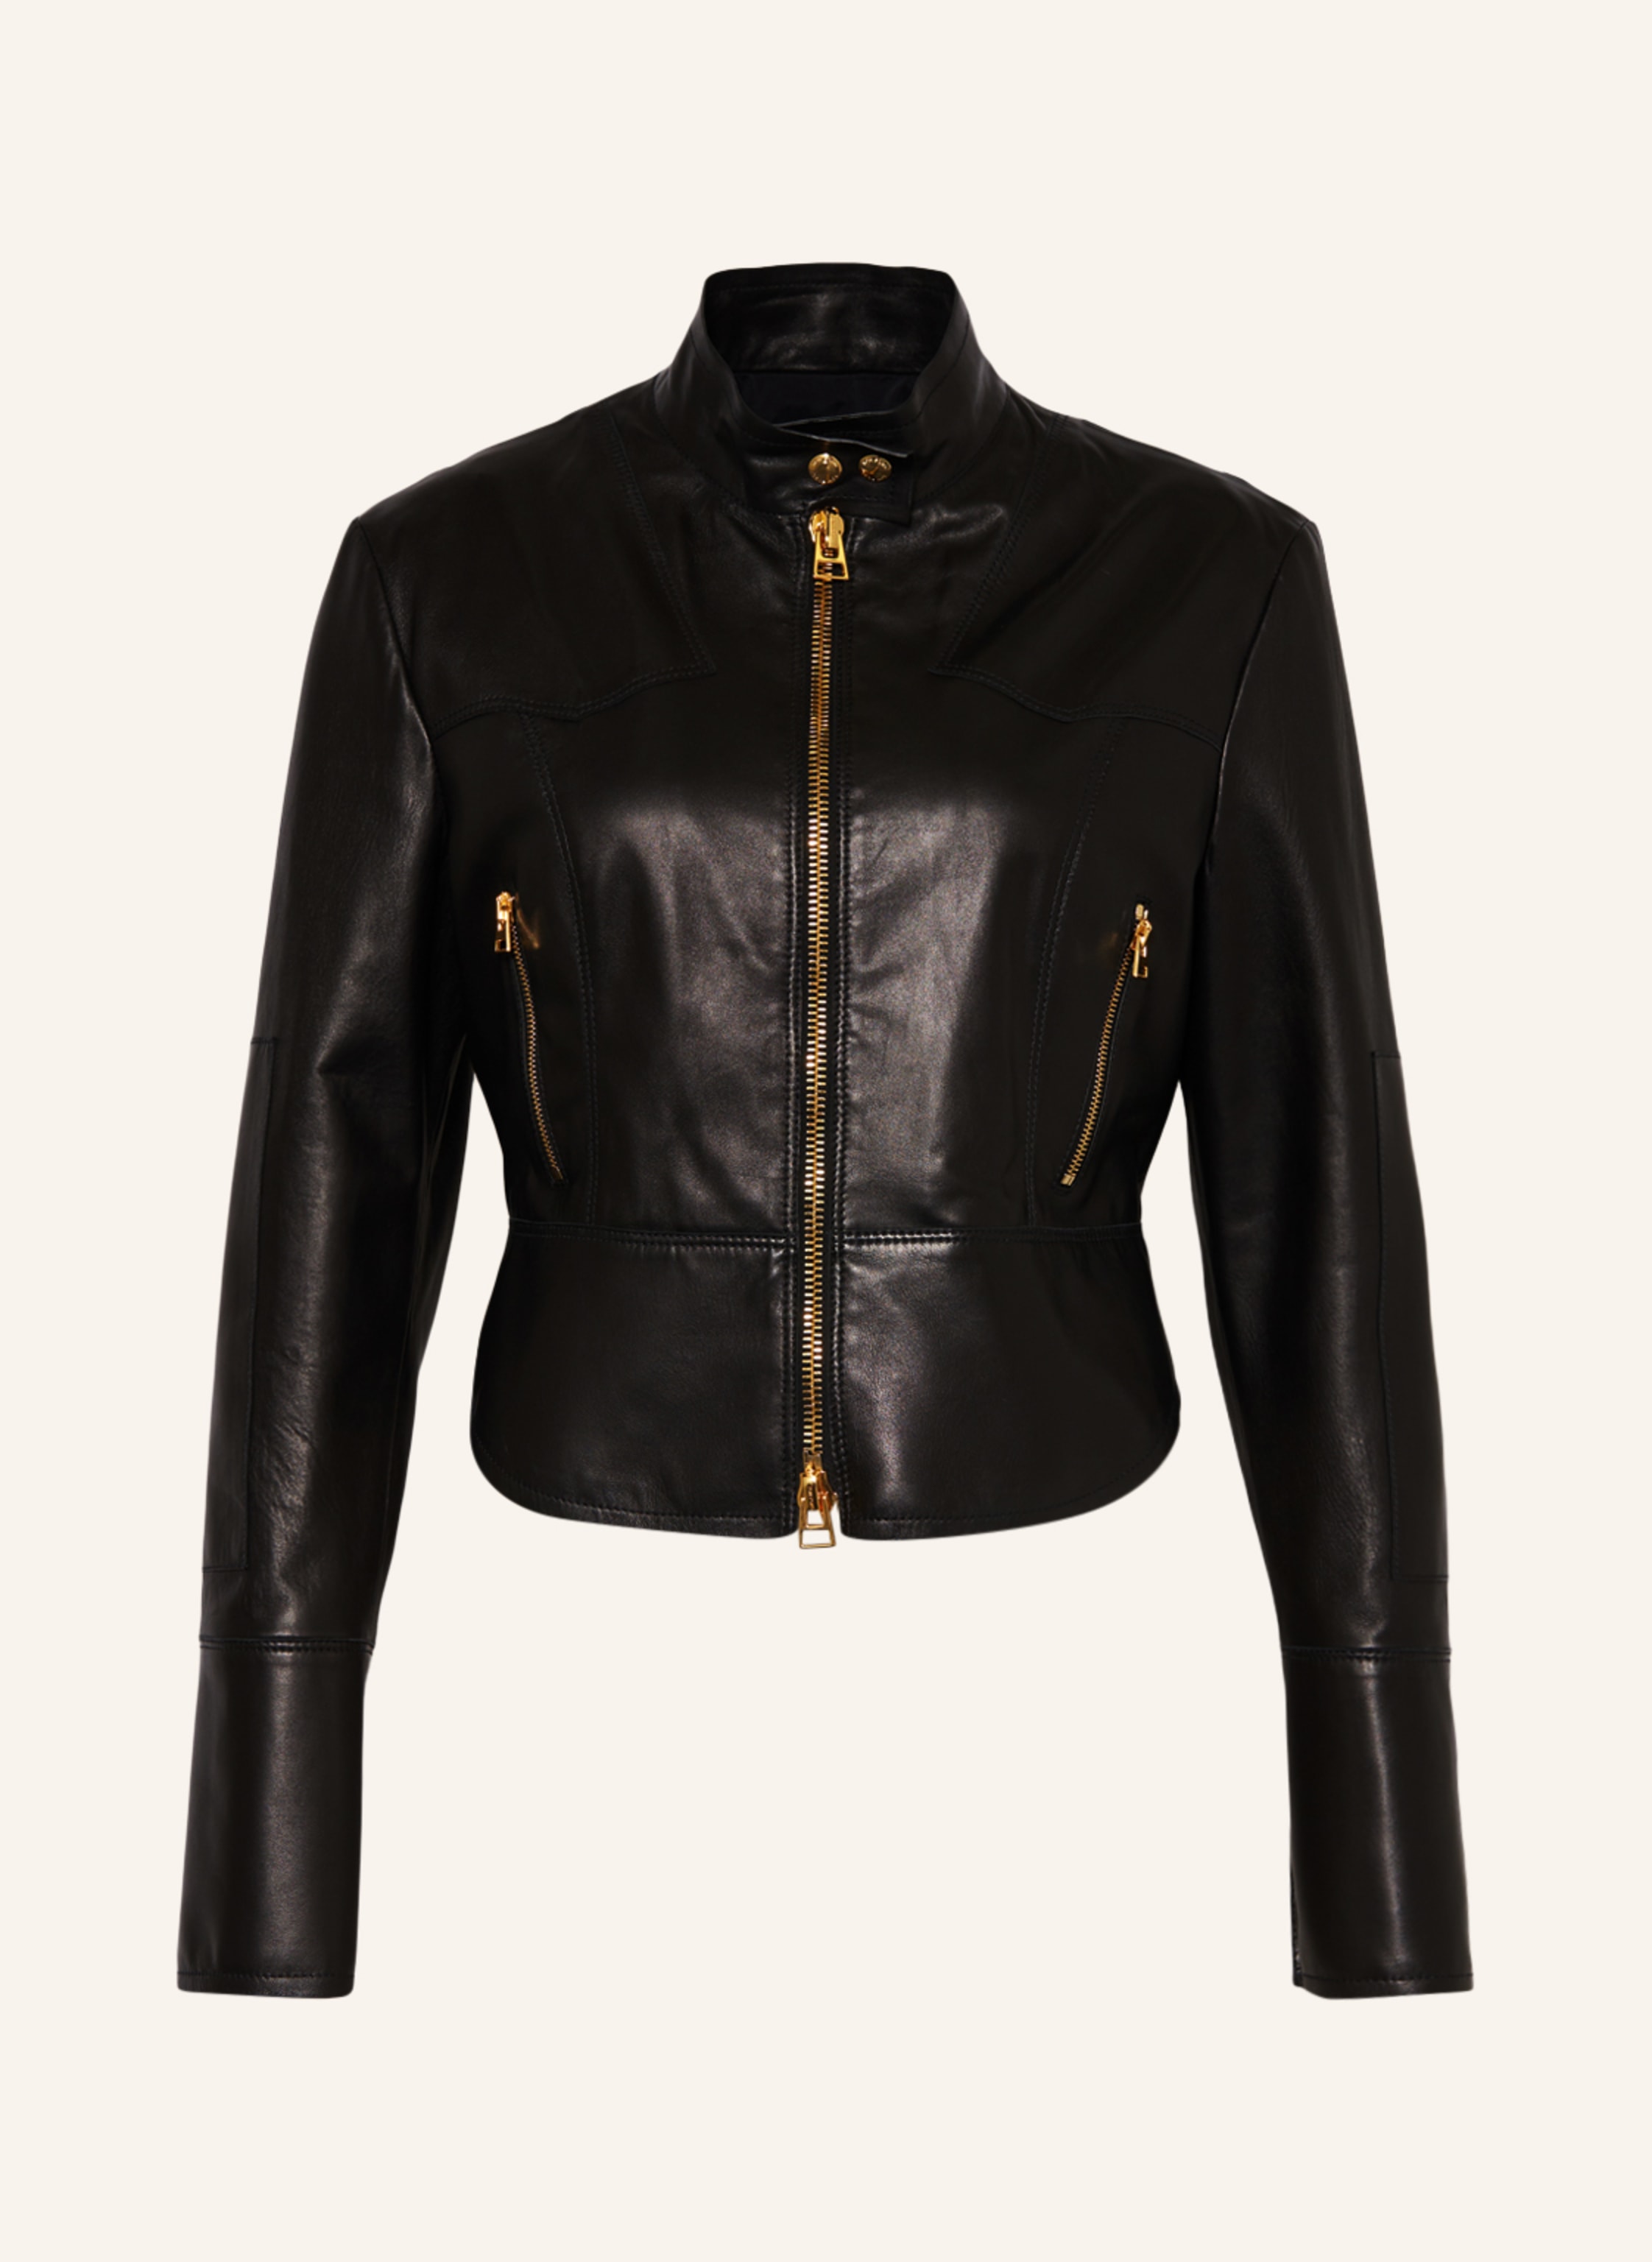 TOM FORD Cropped leather jacket in black | Breuninger